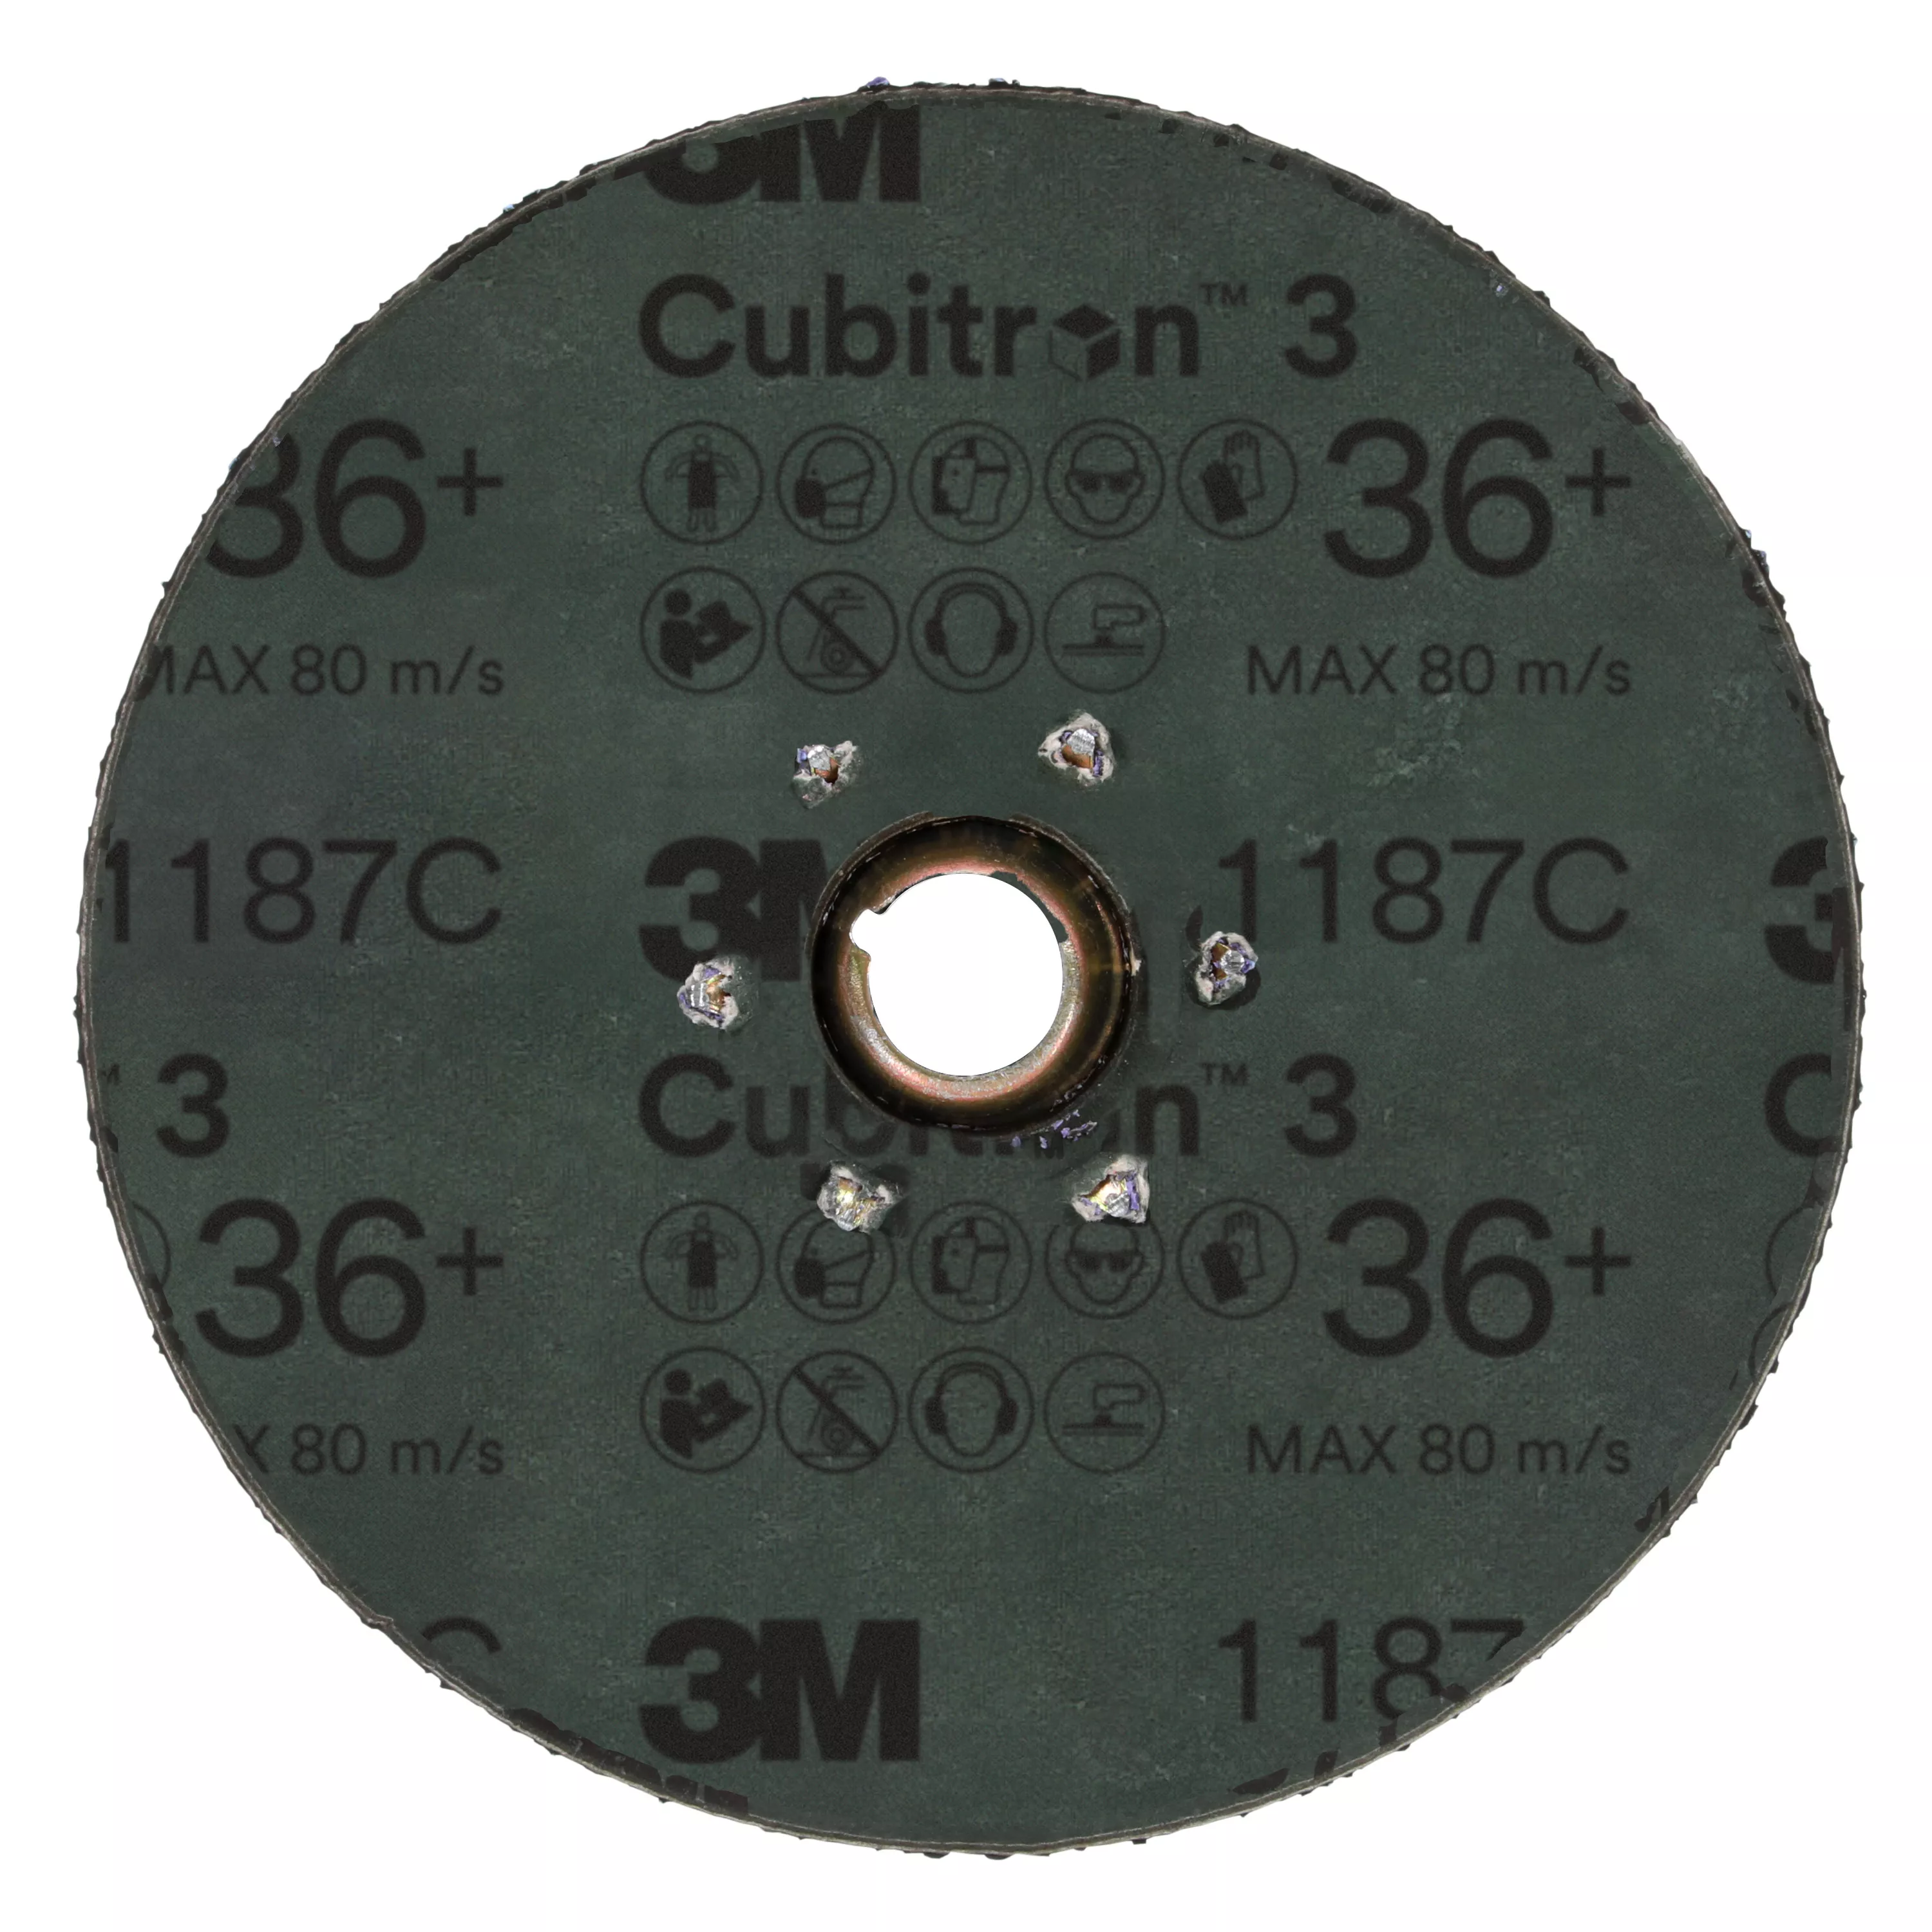 SKU 7100331892 | 3M™ Cubitron™ 3 Fibre Disc 1187C